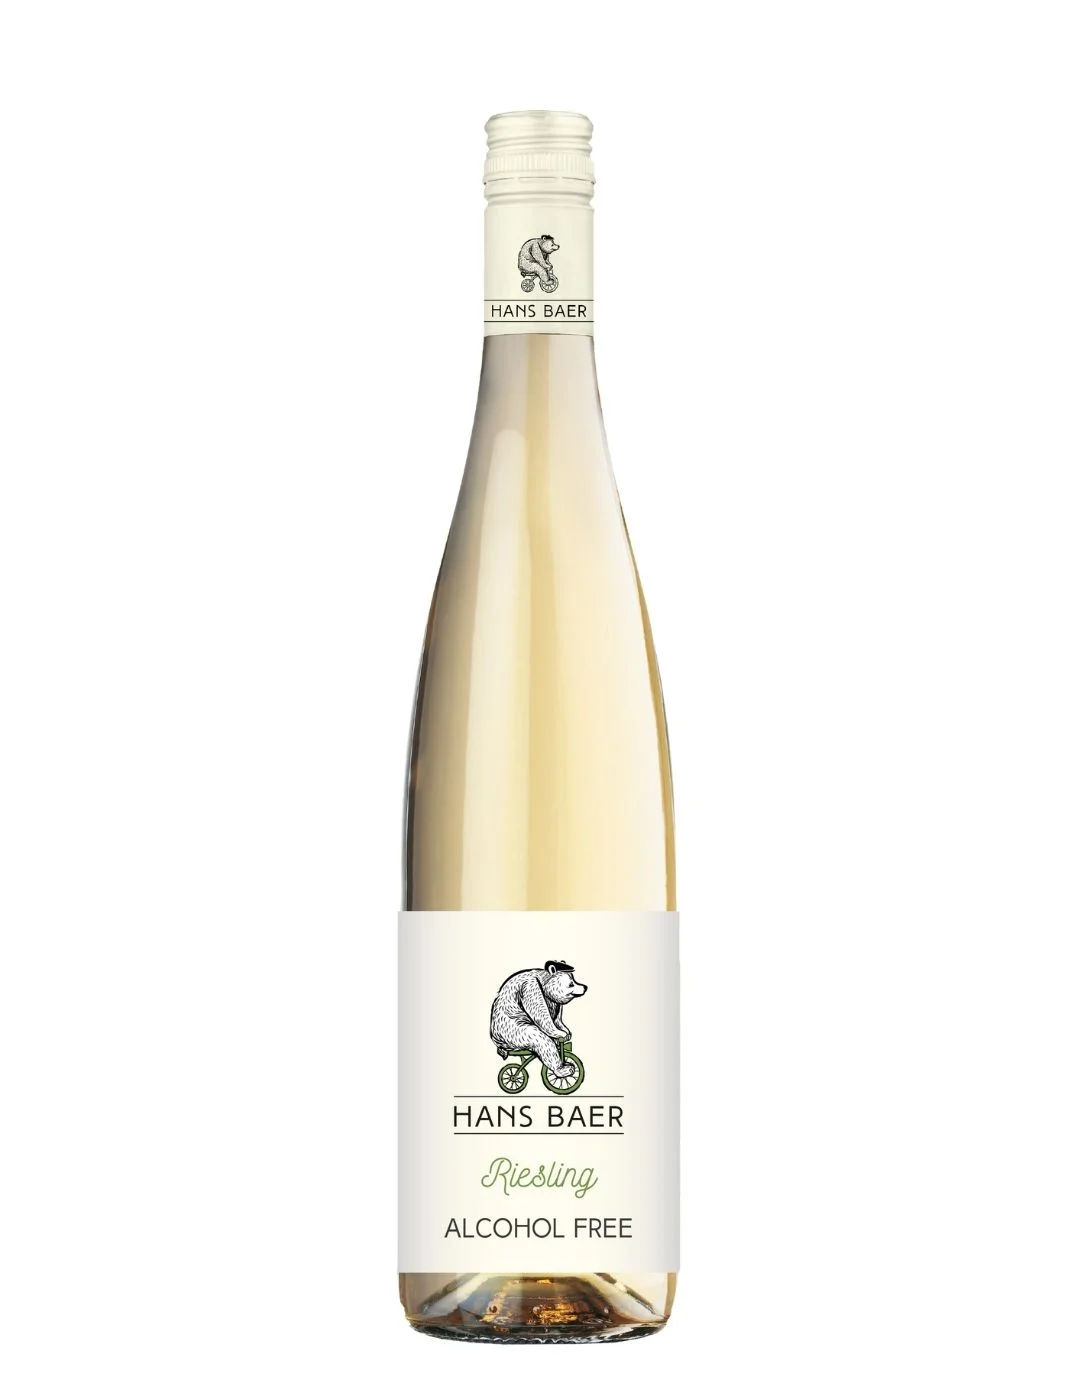 Vin Blanc sans alcool 0.0% - Qualité+ Gastronomie